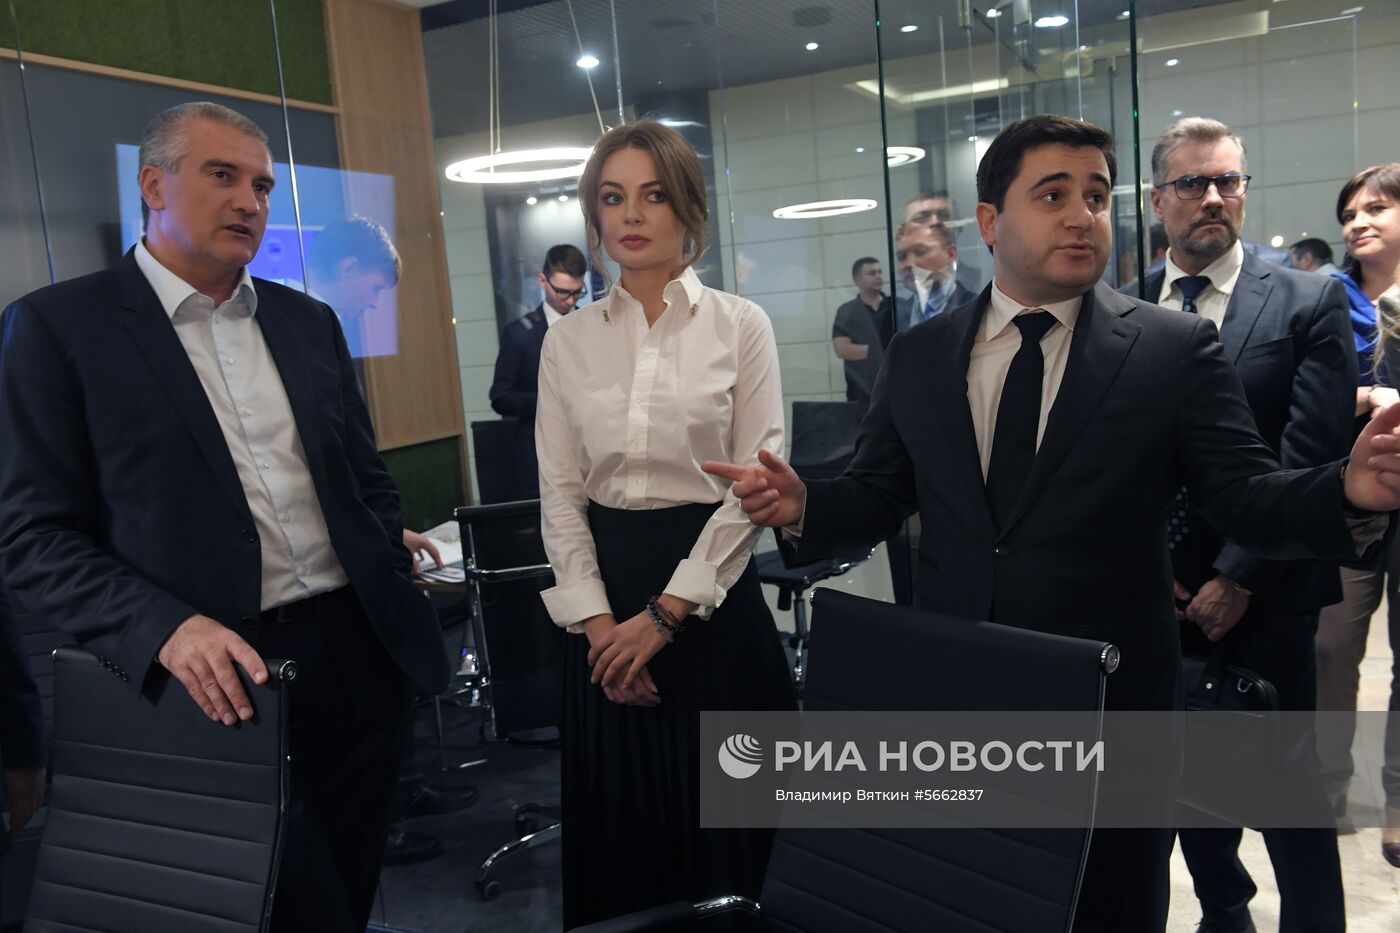 Открытие московского объединенного офиса продаж крымской недвижимости